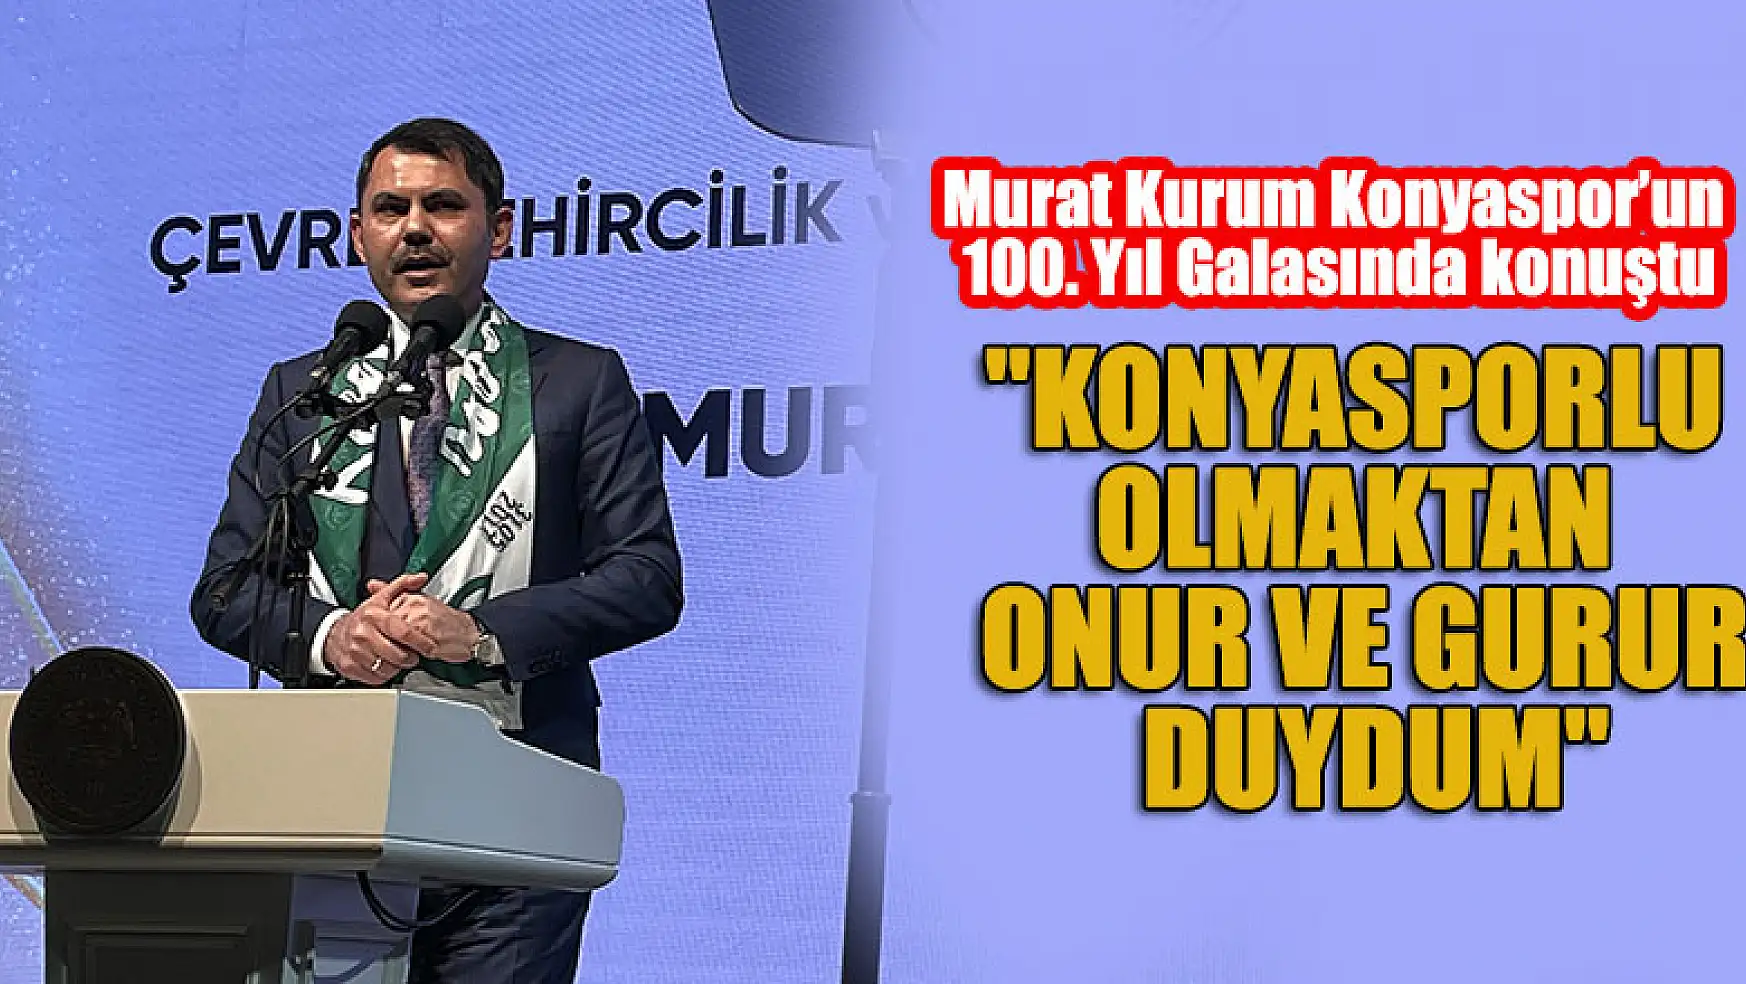 Murat Kurum: 'Konyasporlu olmaktan onur ve gurur duydum'